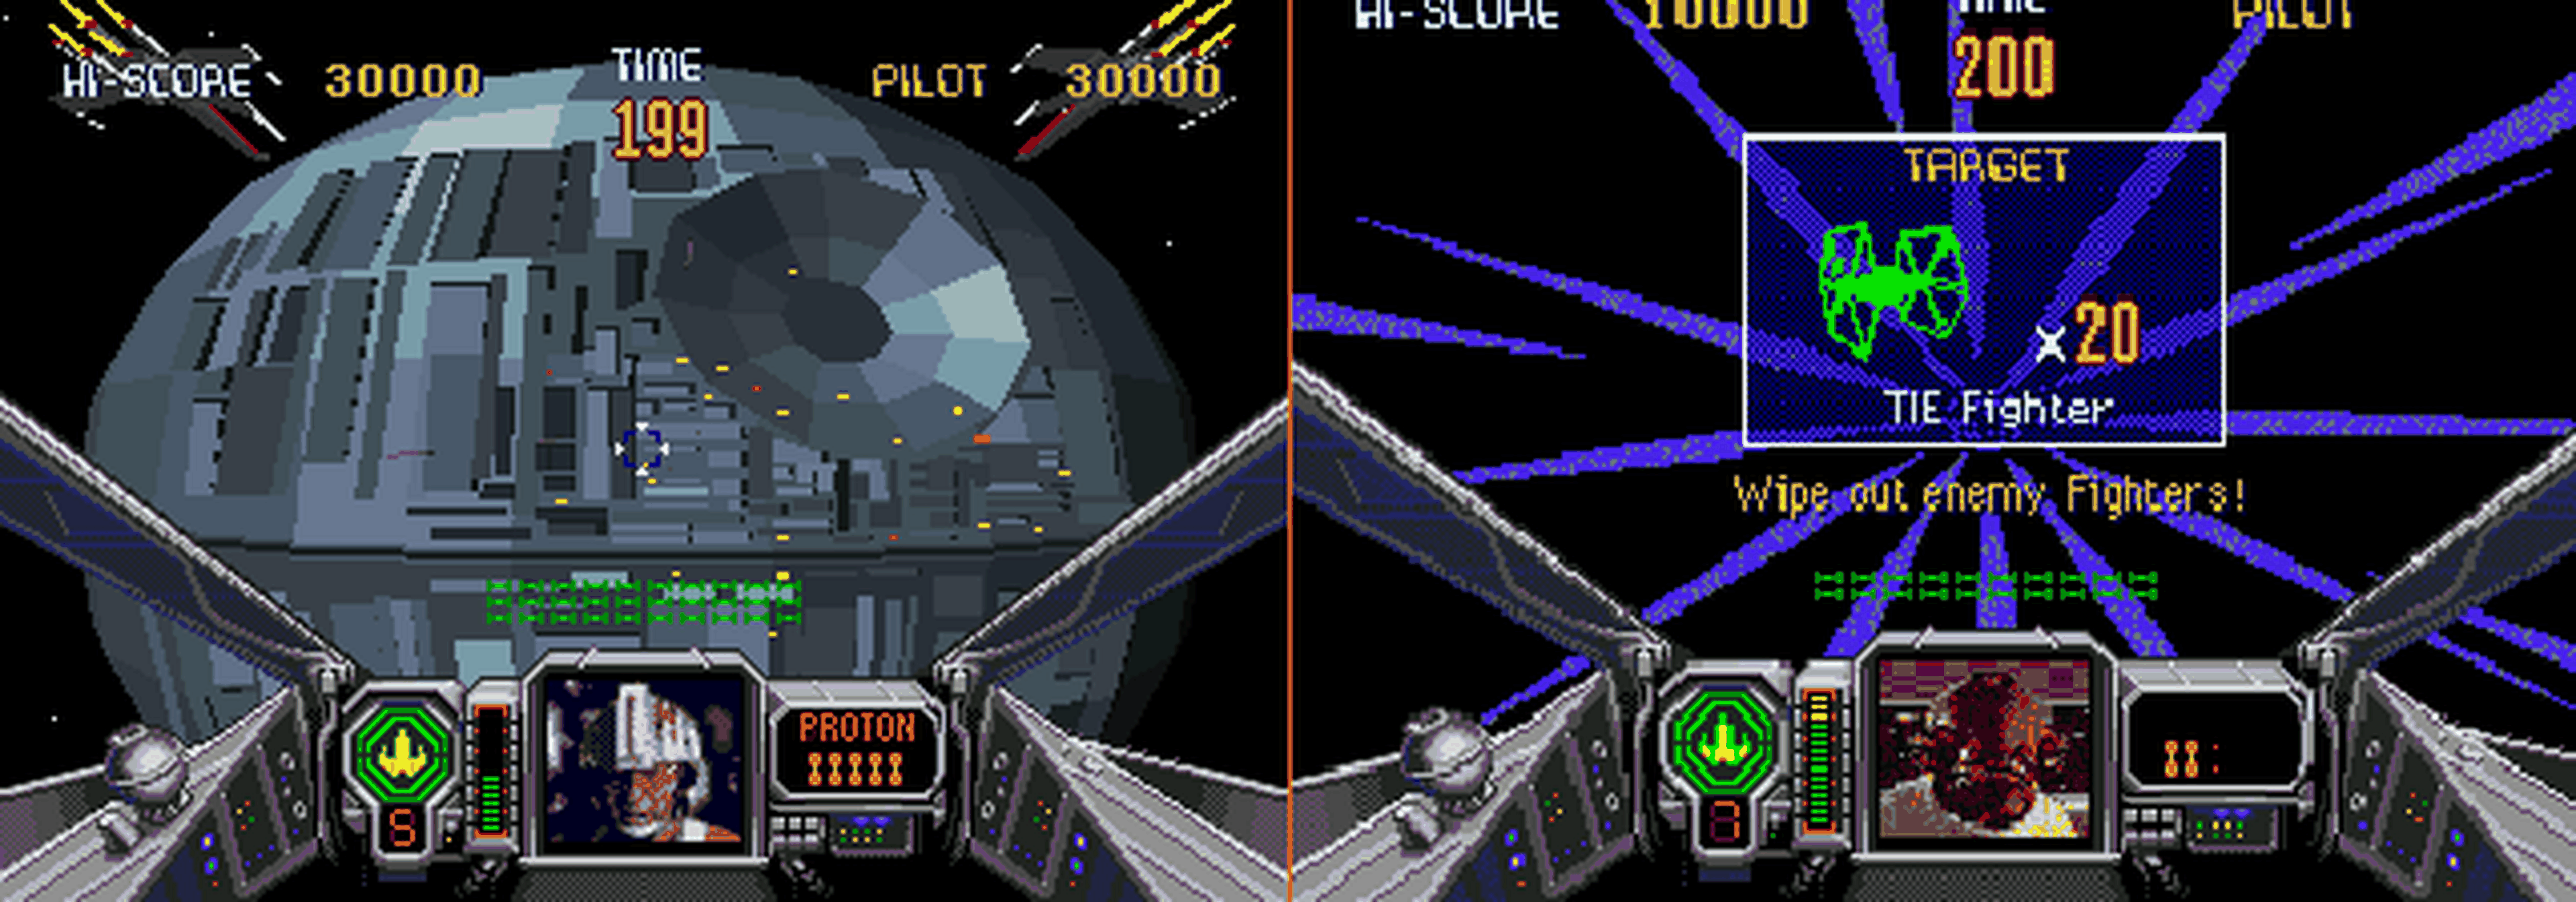 Hobby Consolas, hace 20 años: Star Wars Arcade